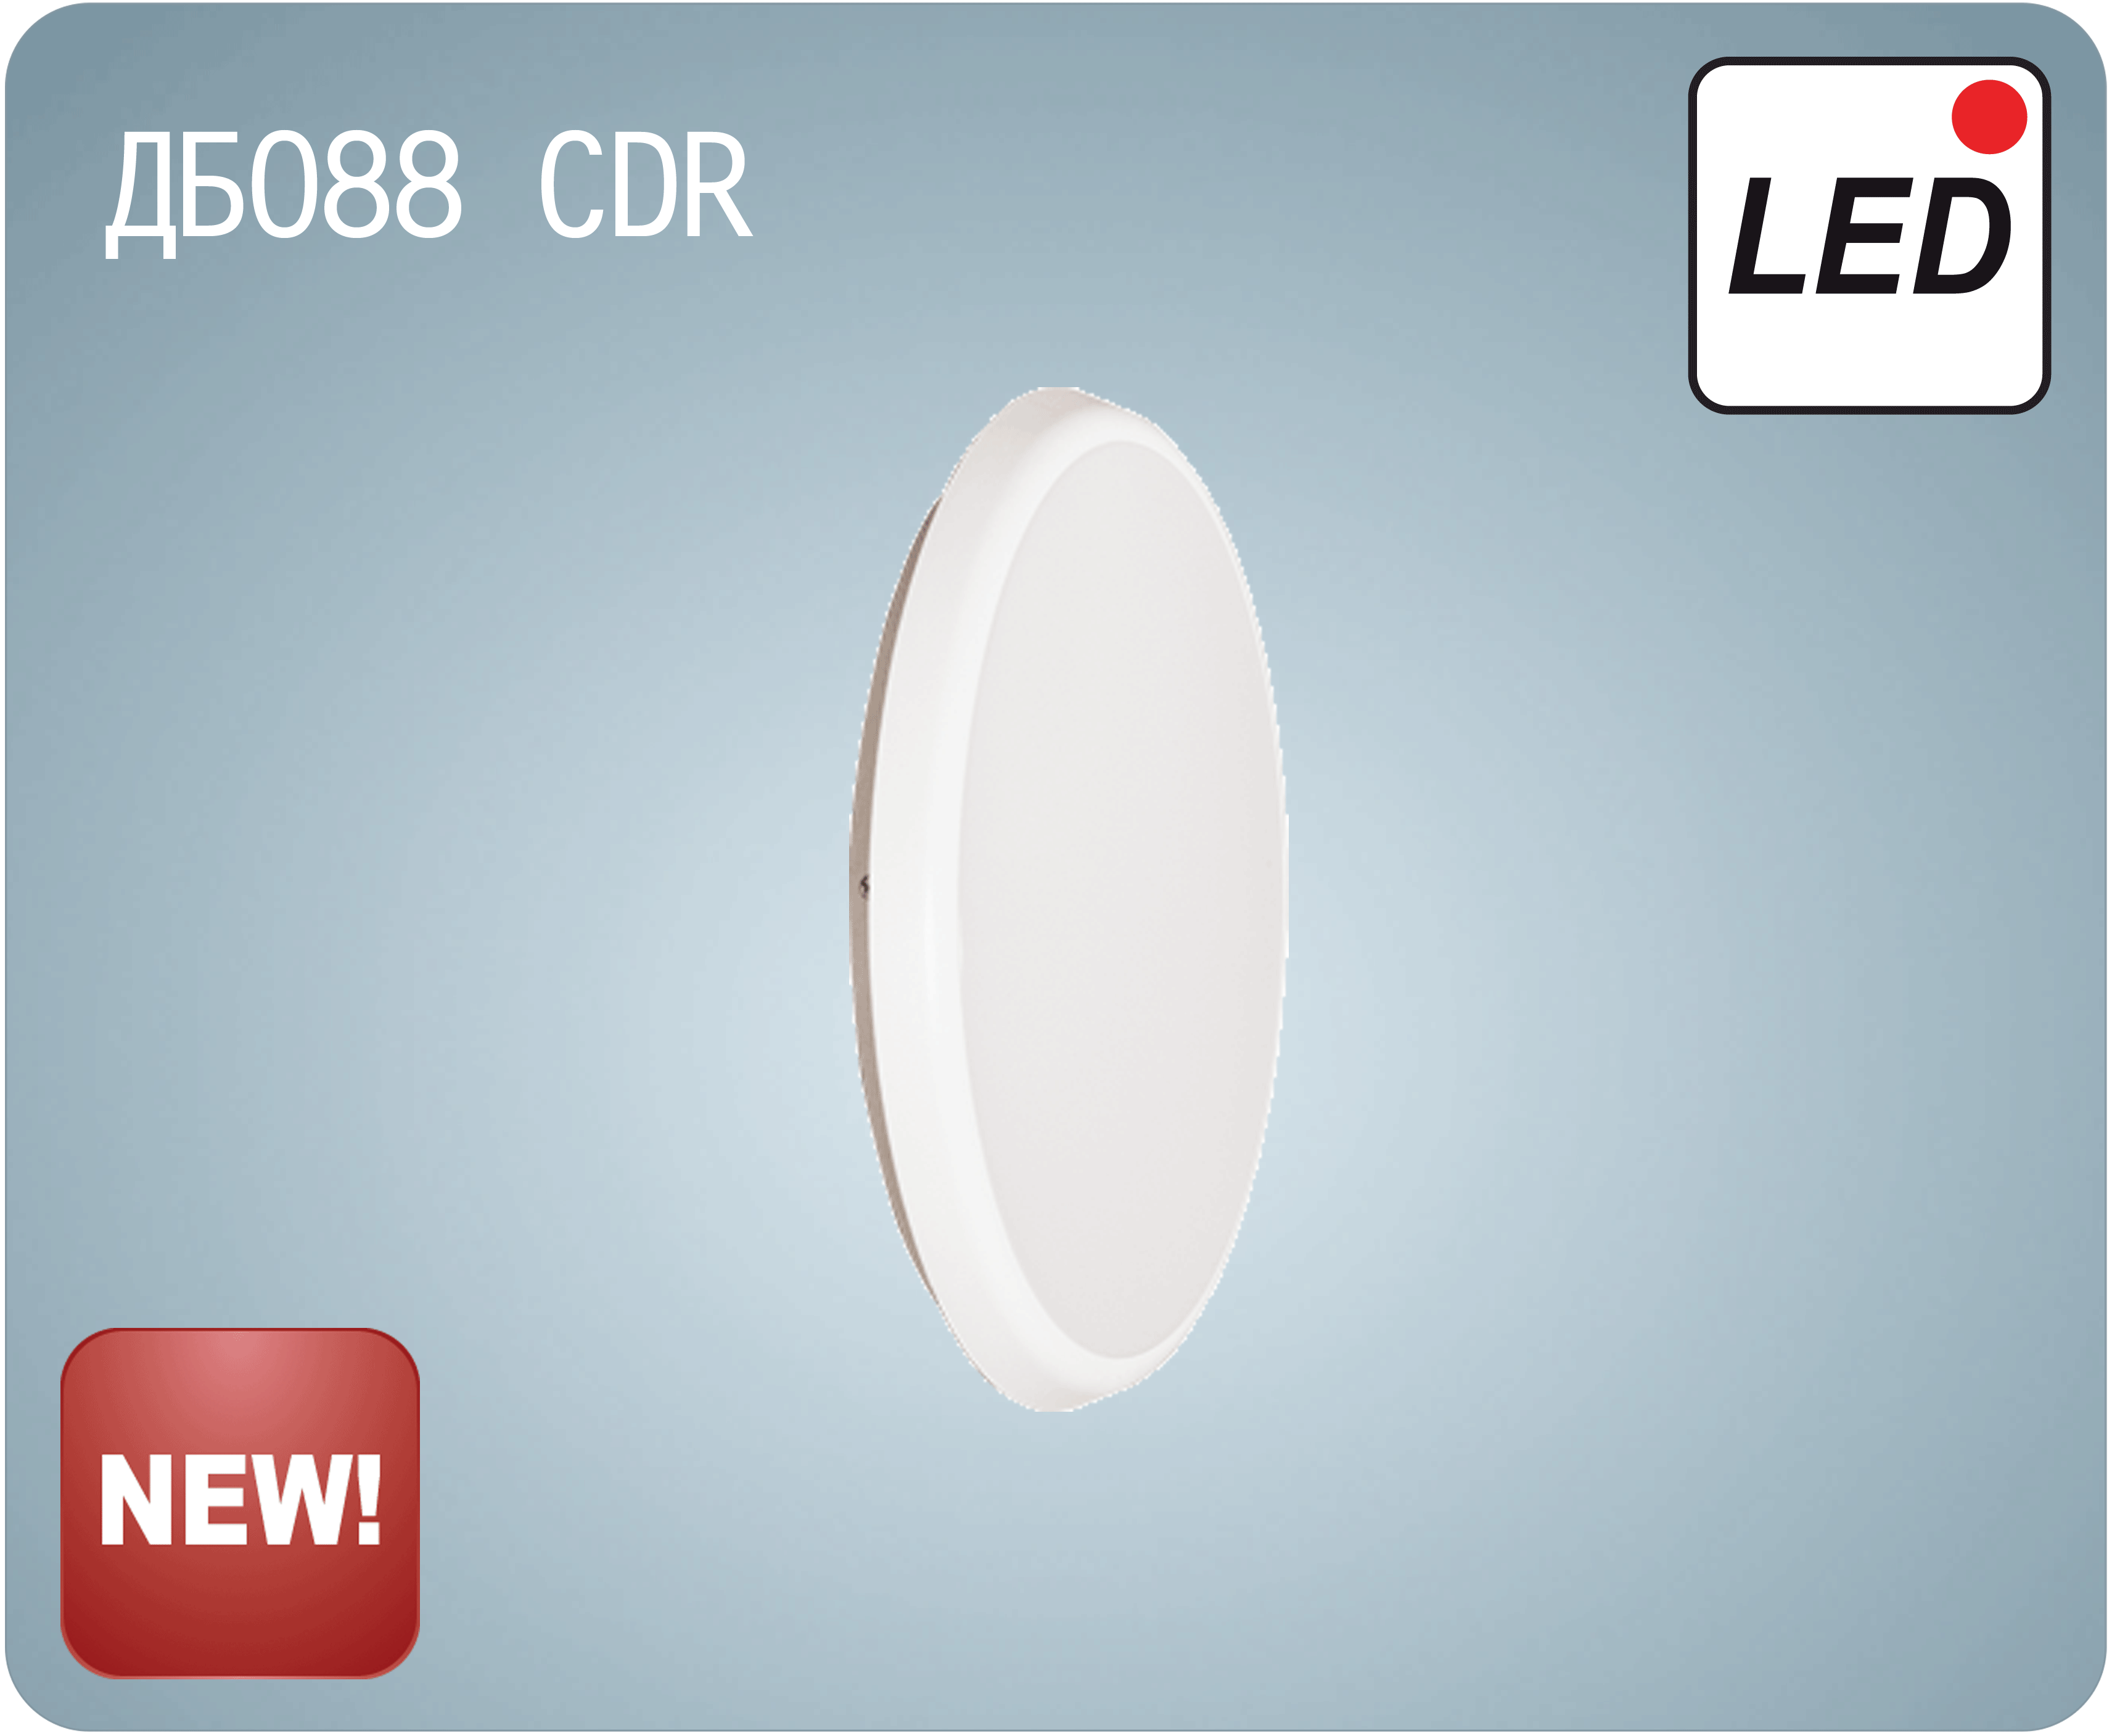 Новая серия светодиодных светильников ДБО88 CDR от АСТЗ